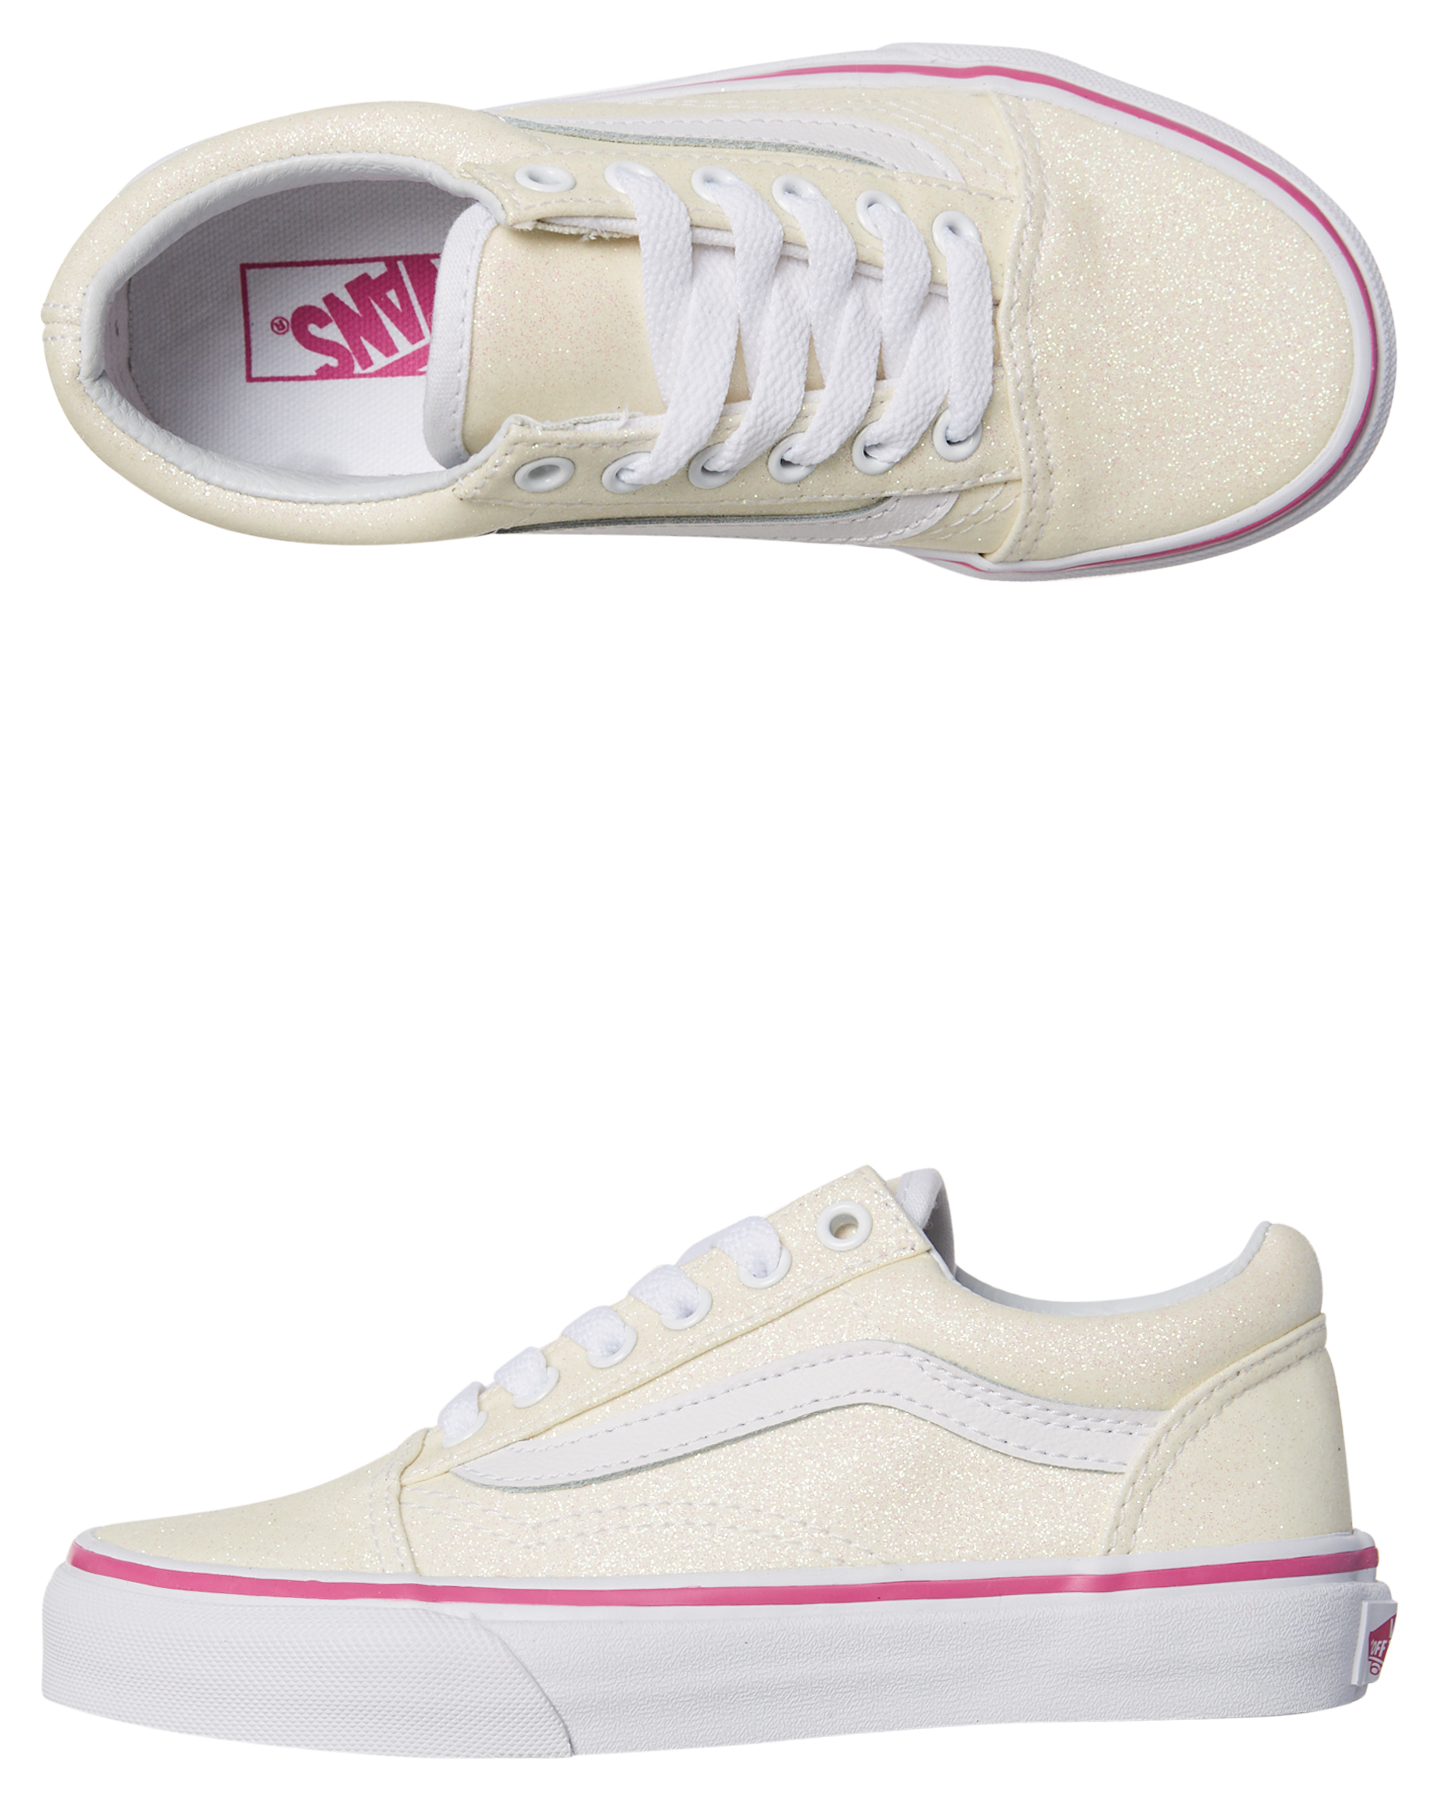 white vans sneakers for girls